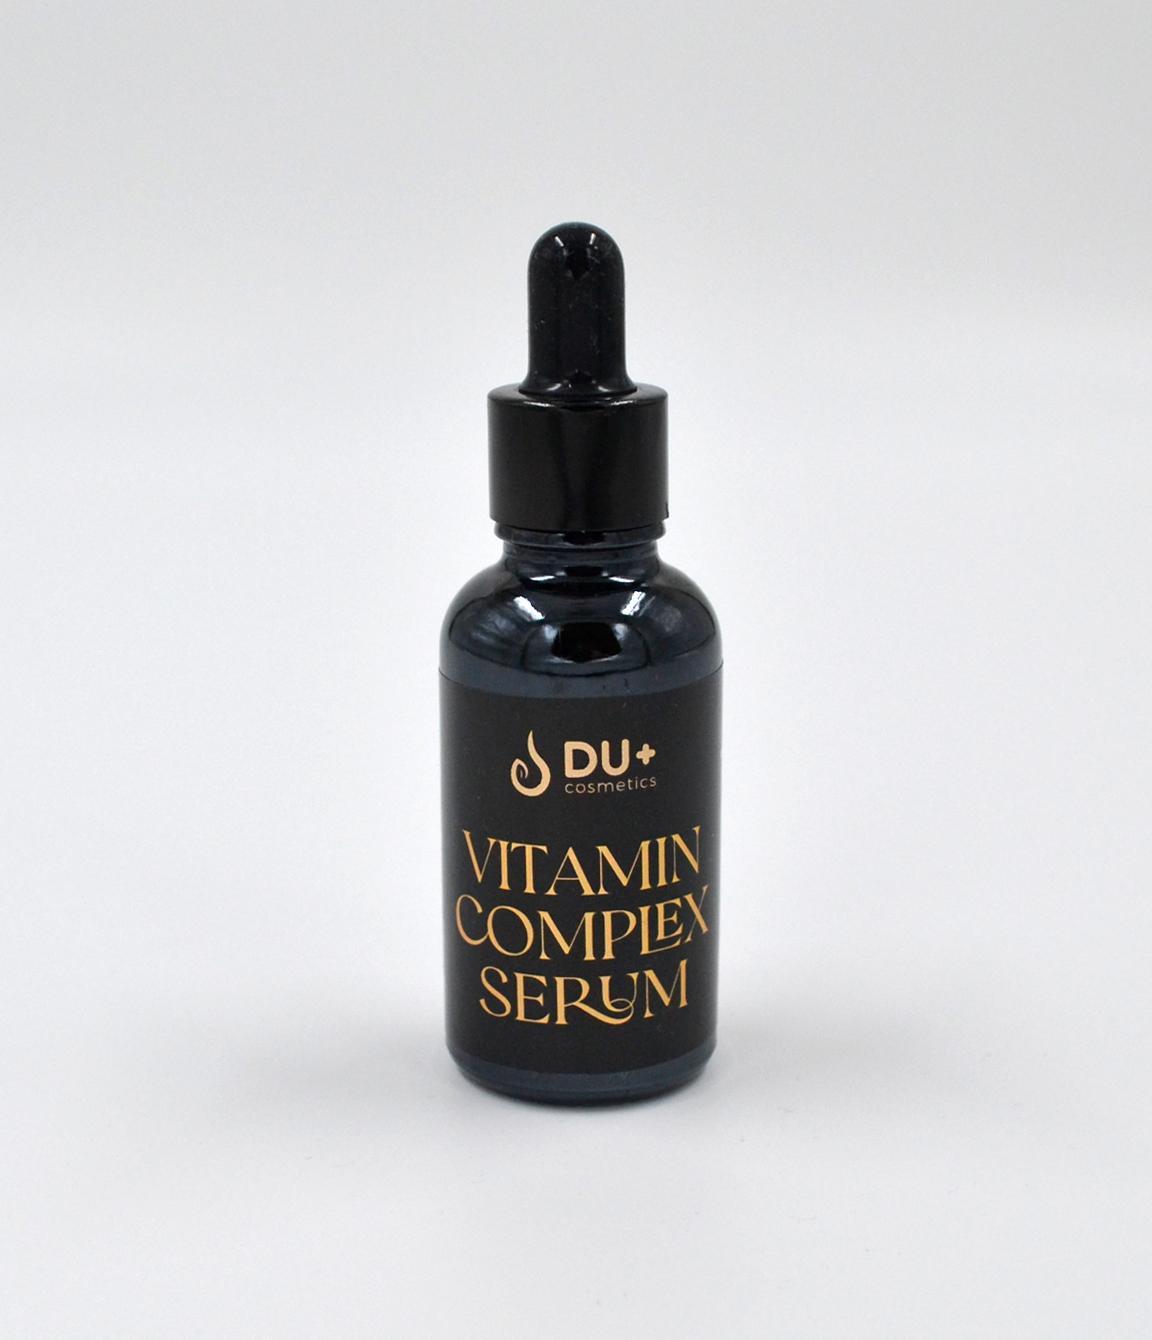 Du+ Cosmetics Home Care Vitamini+H2O serum, 10ml